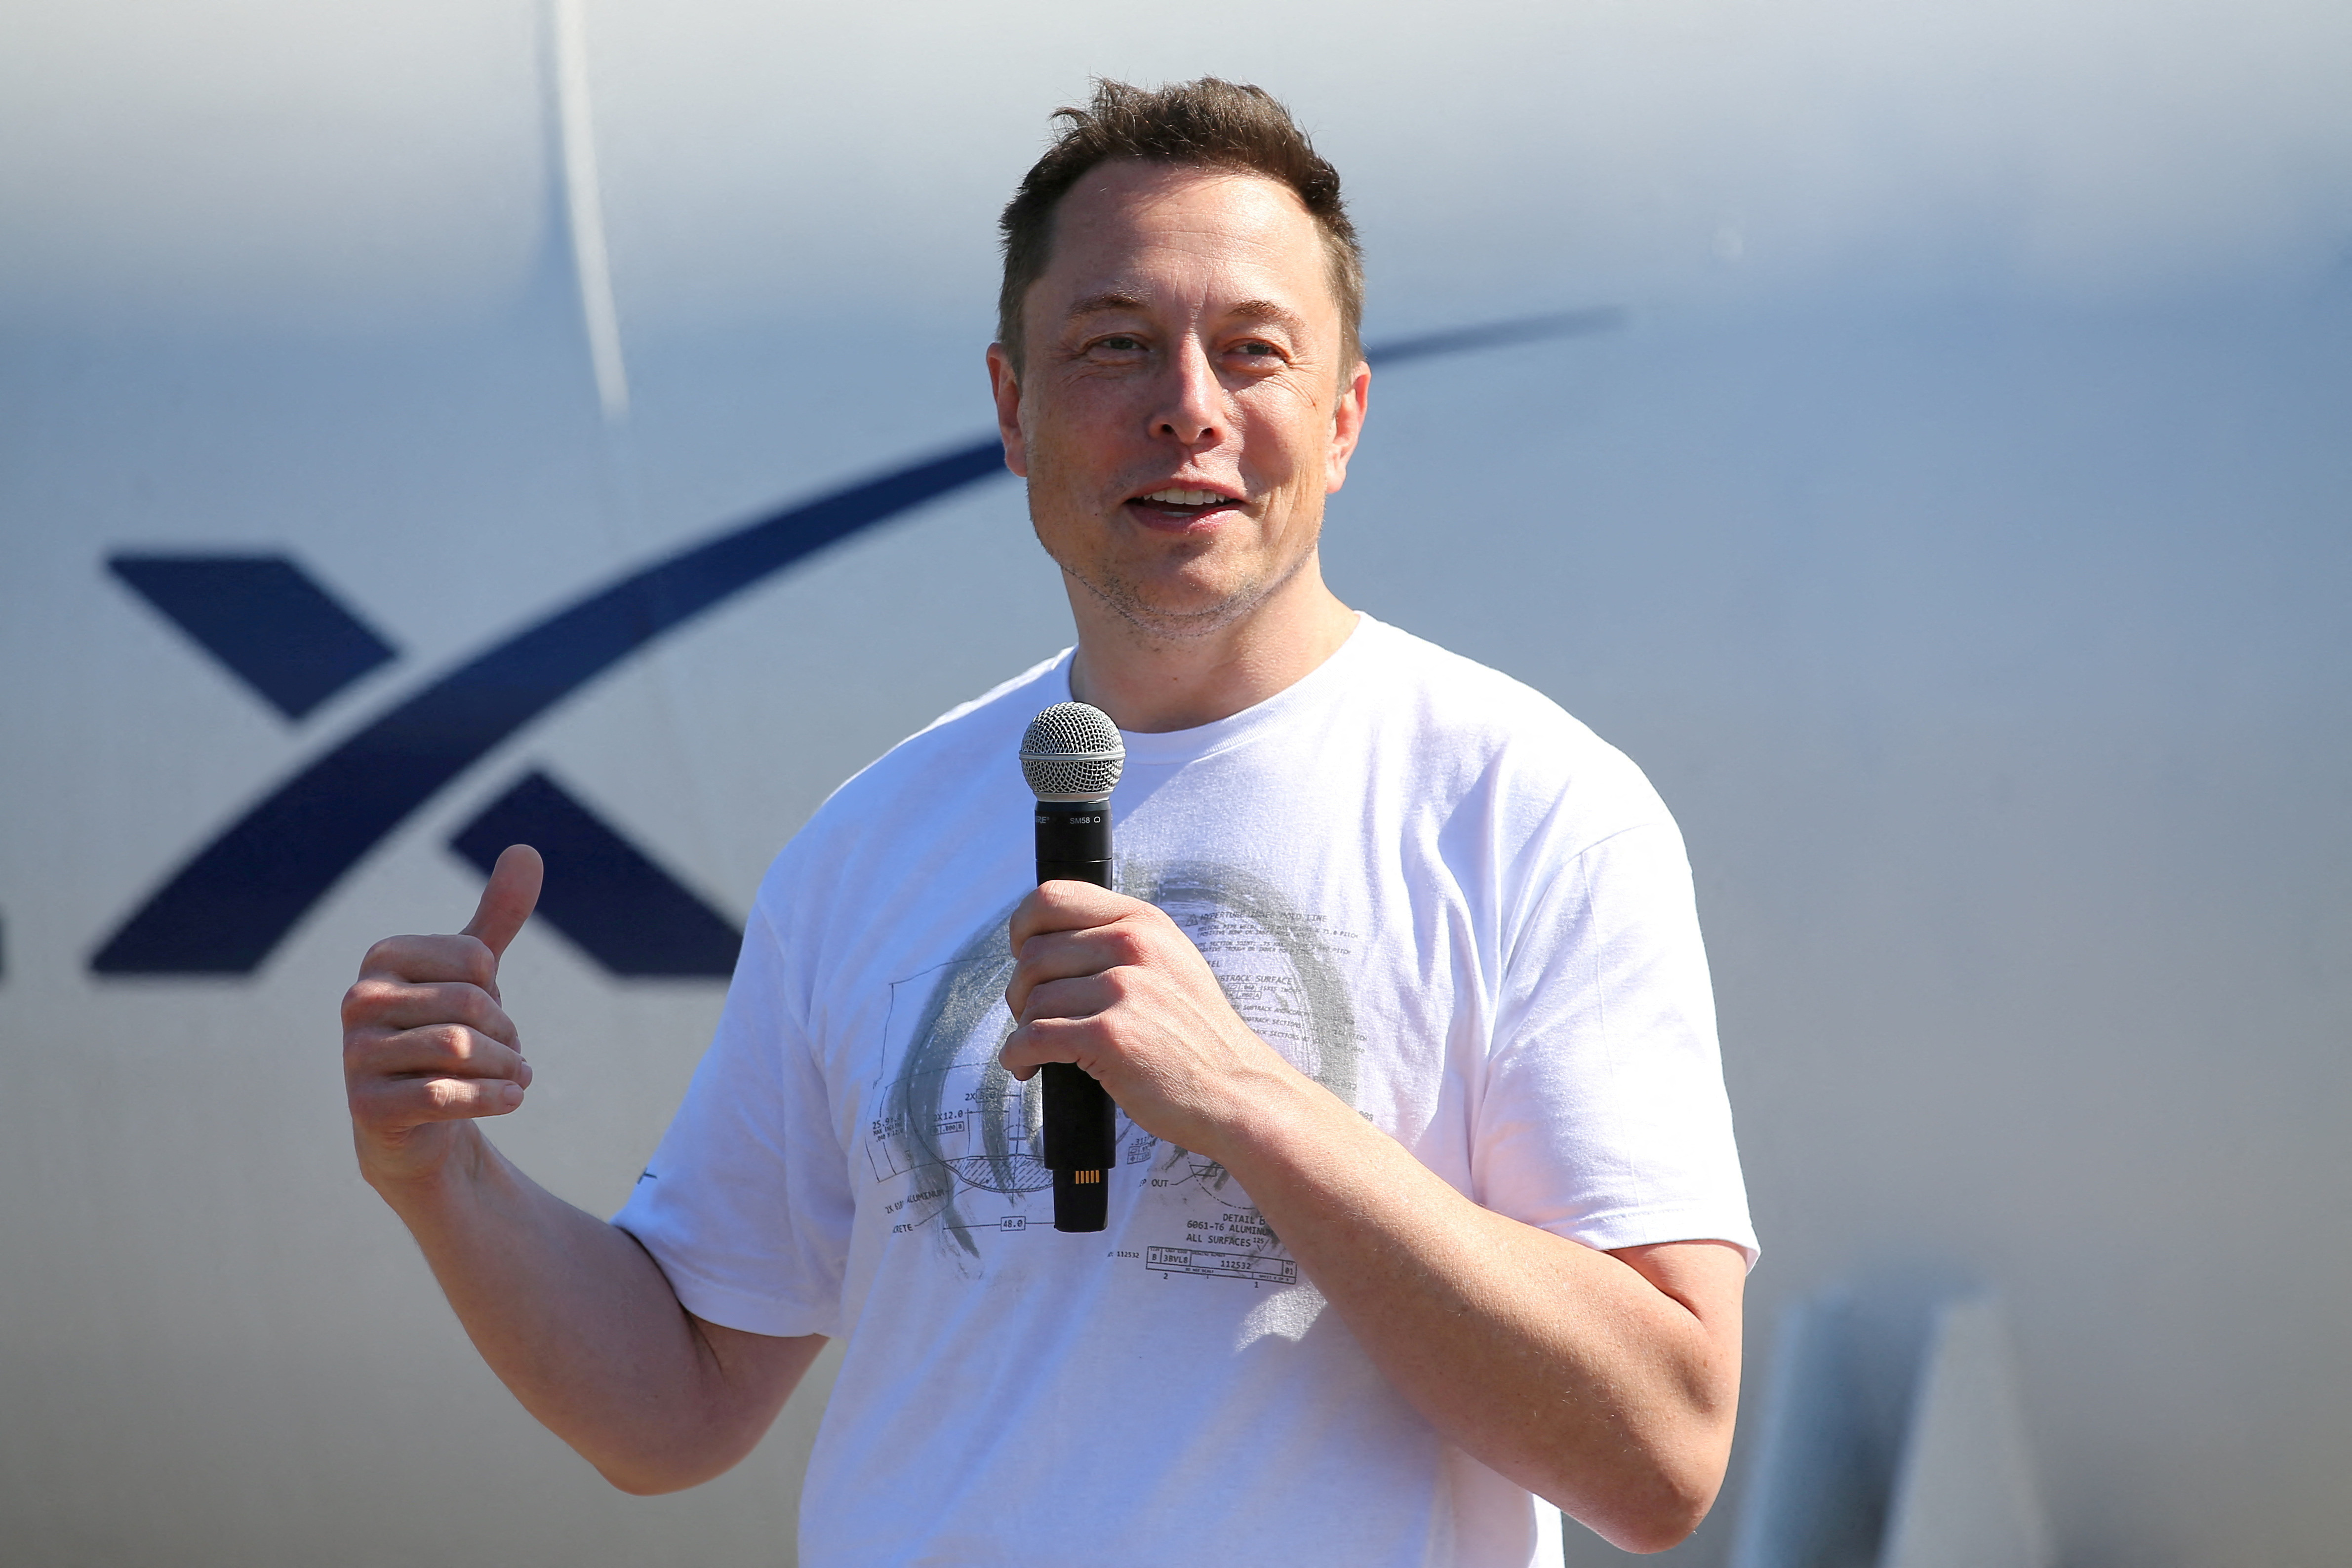 Por primera vez, un empleado fiel a Elon Musk relató cómo fue despedido de Twitter
 REUTERS/Mike Blake/File Photo